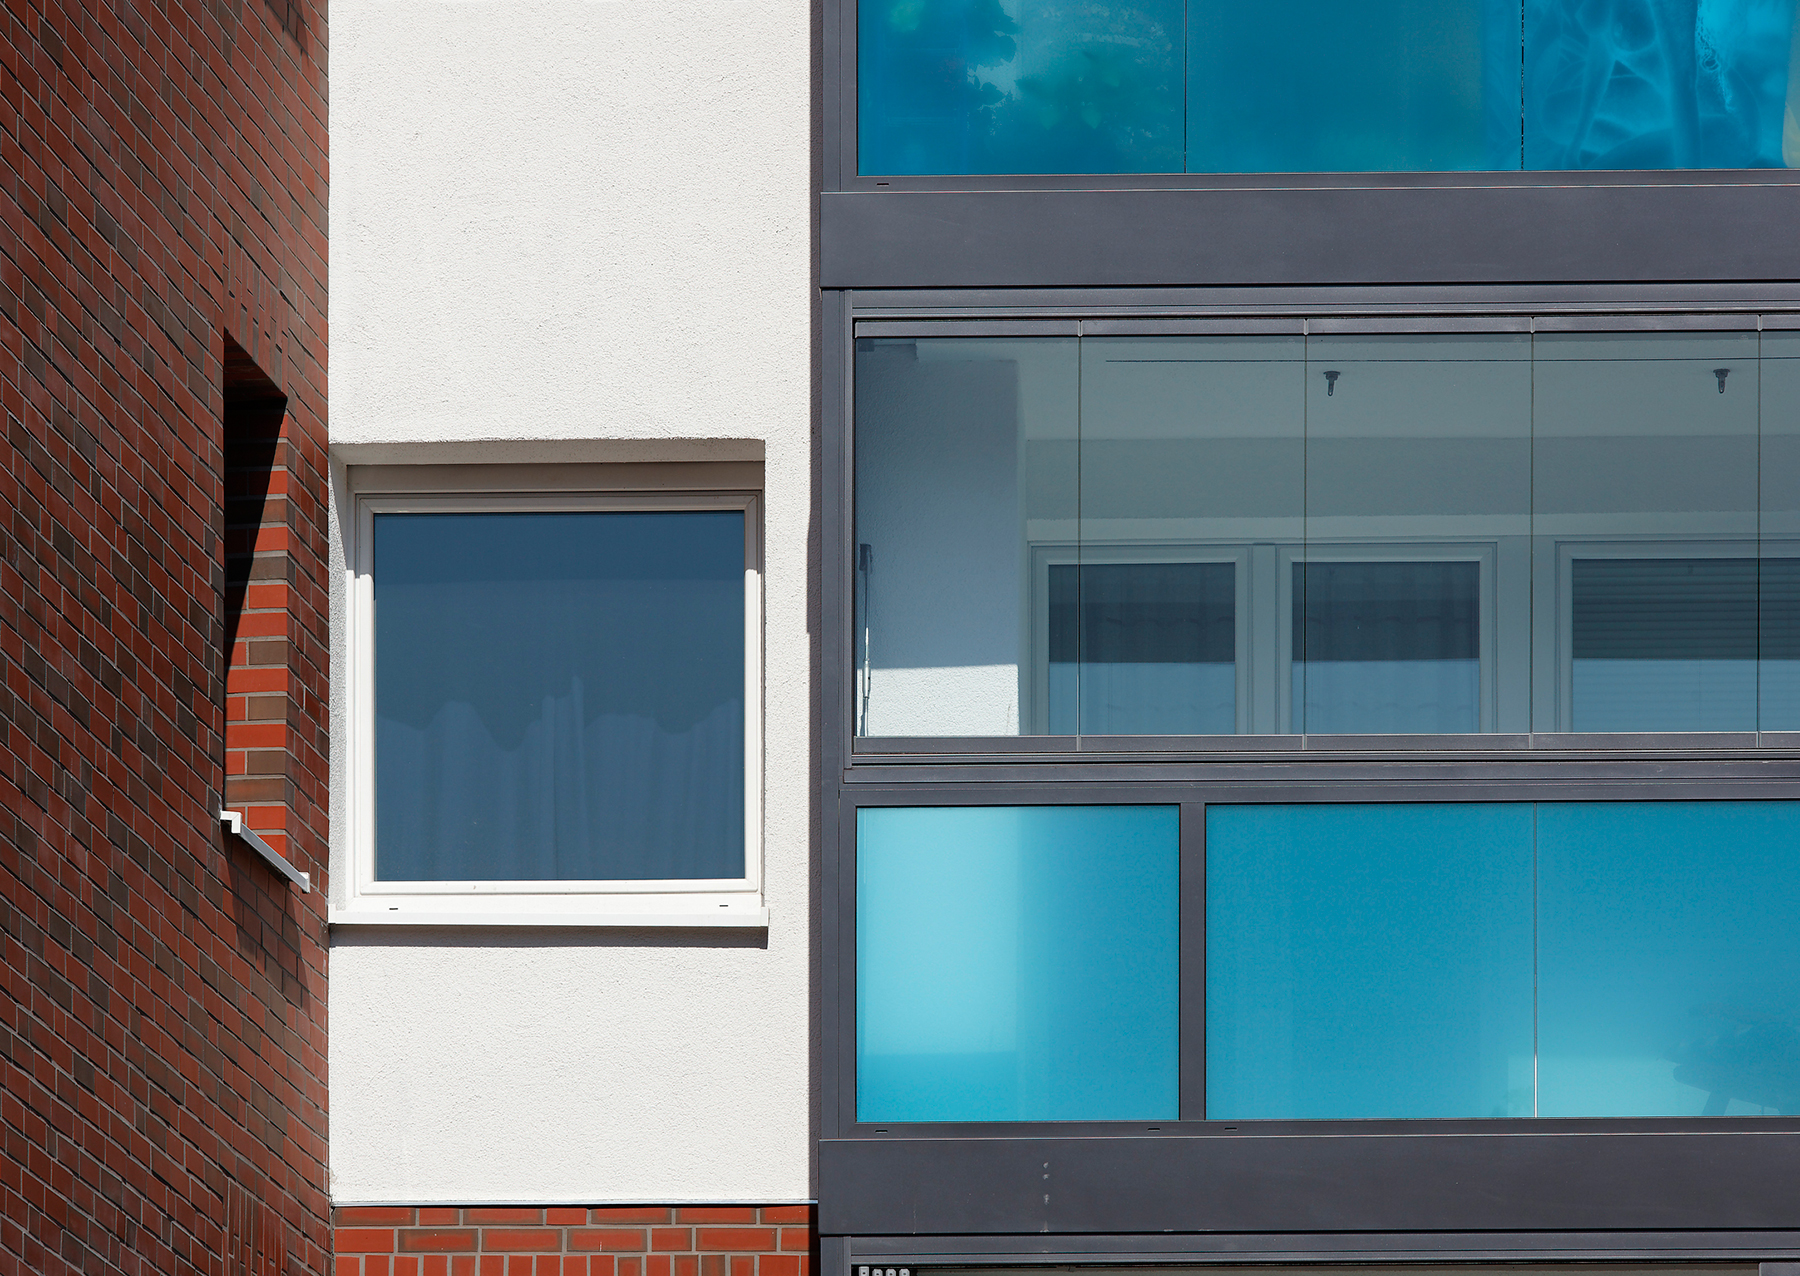 Schüco balkony, vyplněné bodově uchycenými skly VSG s barevnými fóliemi, byly nad úrovní zábradlí kombinovány se skládacím zasklením, poskytujícím ochranu před nepříznivým počasím.